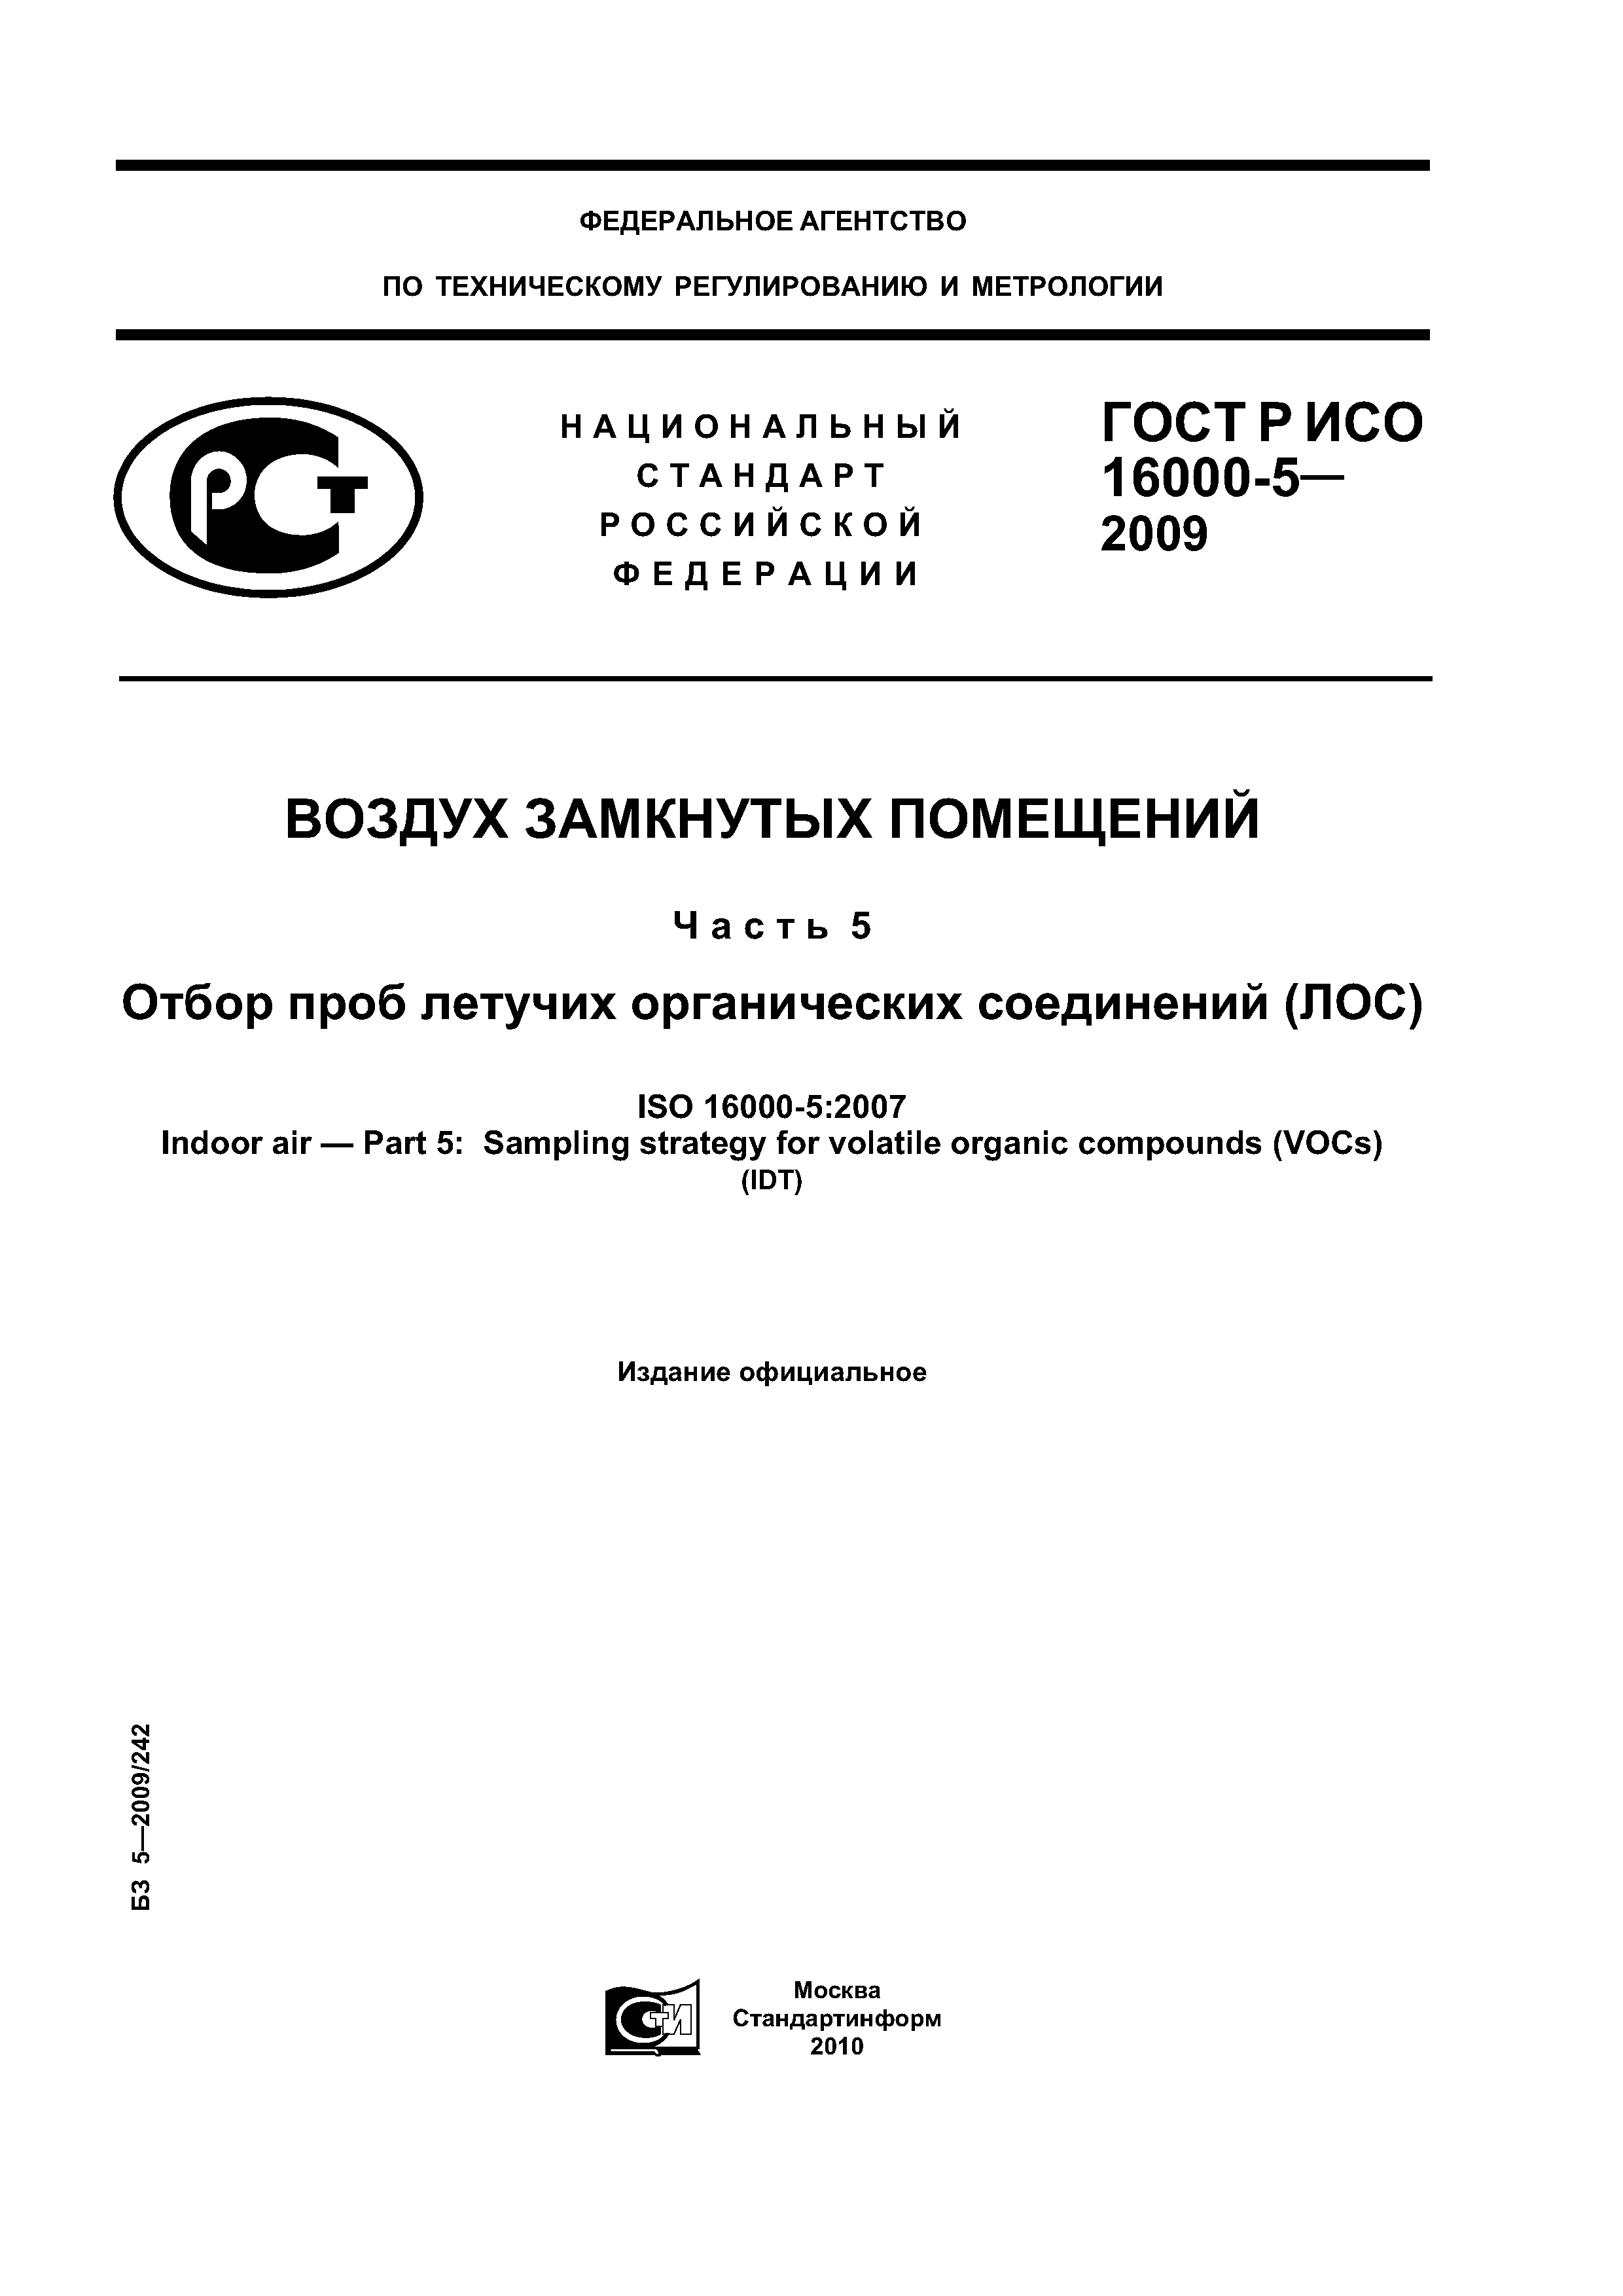 ГОСТ Р ИСО 16000-5-2009